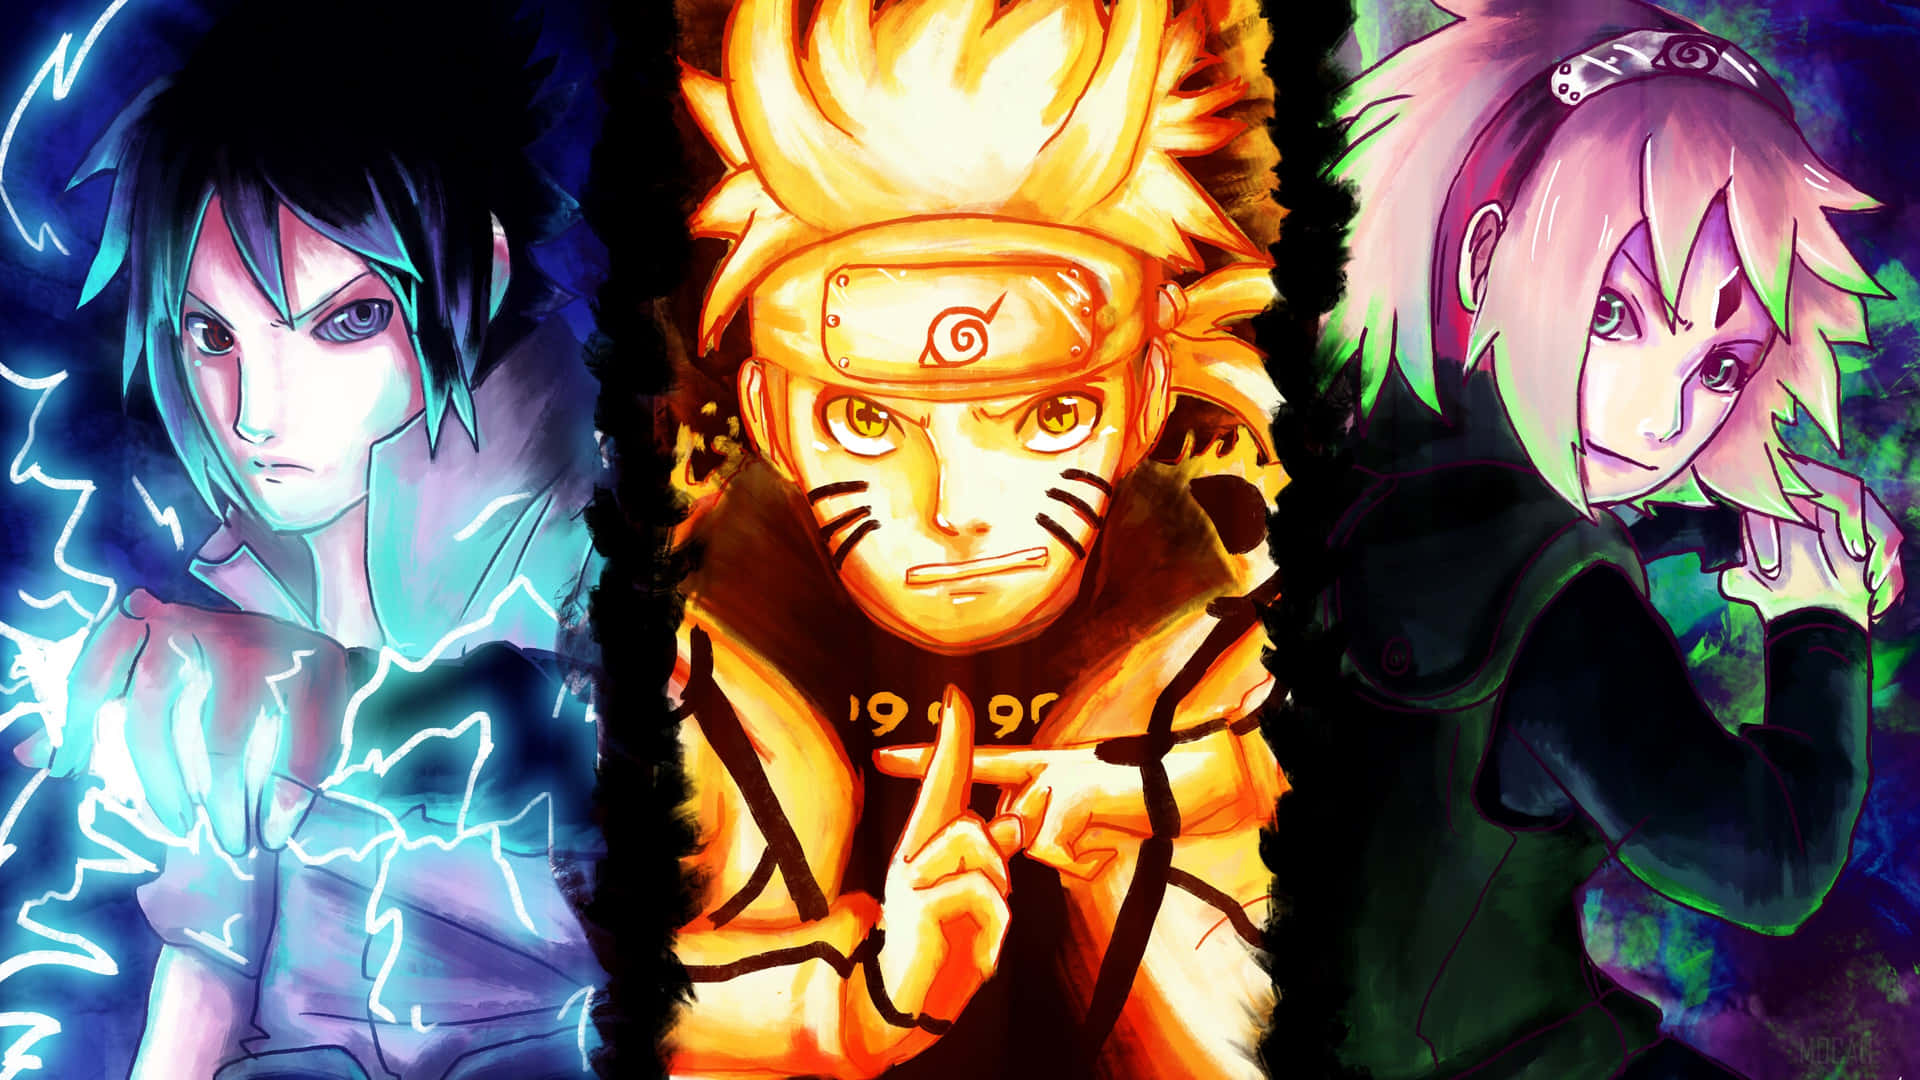 Download Naruto Group Wallpaper: hình nền Naruto chibi Bạn đam mê Naruto và muốn sở hữu những hình nền đẹp lung linh về những nhân vật yêu thích? Thì hãy nhanh tay tải ngay Naruto Group Wallpaper - bộ sưu tập hình nền Naruto chibi vô cùng đáng yêu. Mỗi lần mở điện thoại lên, bạn sẽ cảm thấy được tinh thần sảng khoái và thỏa mãn hơn bao giờ hết.